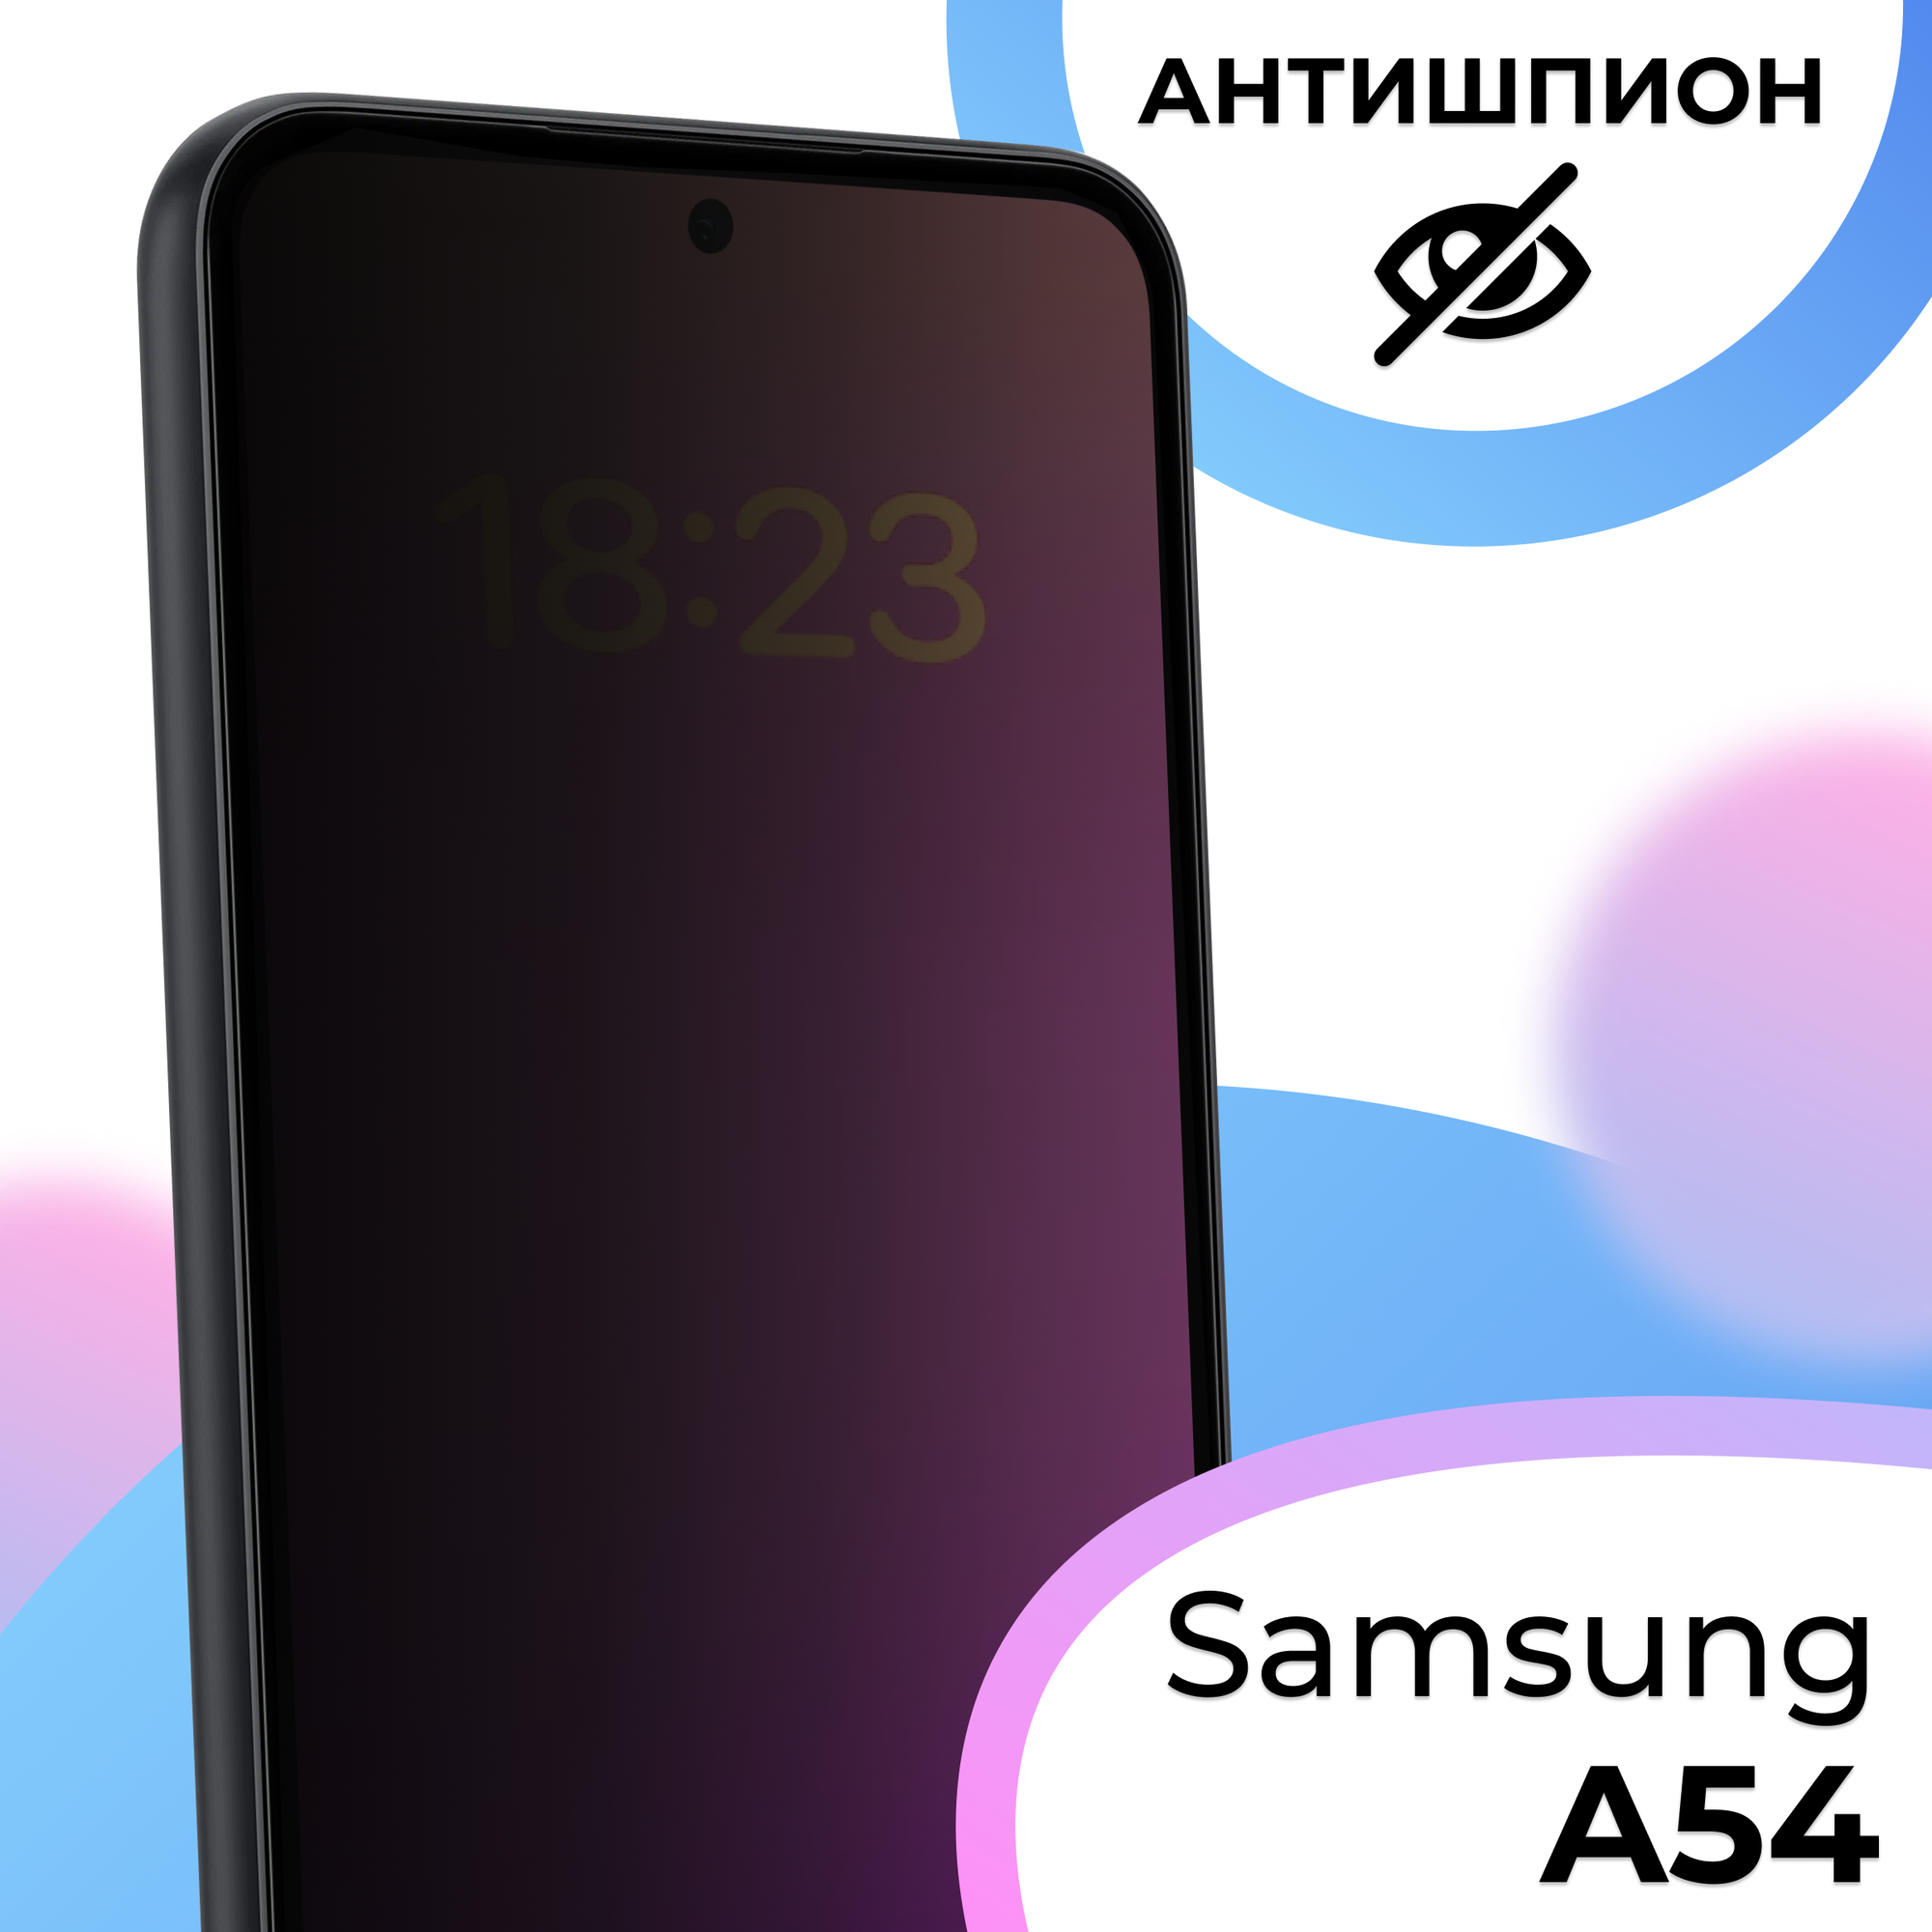 Противоударное защитное стекло антишпион для смартфона Samsung Galaxy А54 / Полноэкранное стекло с олеофобным покрытием на телефон Самсунг Галакси А54